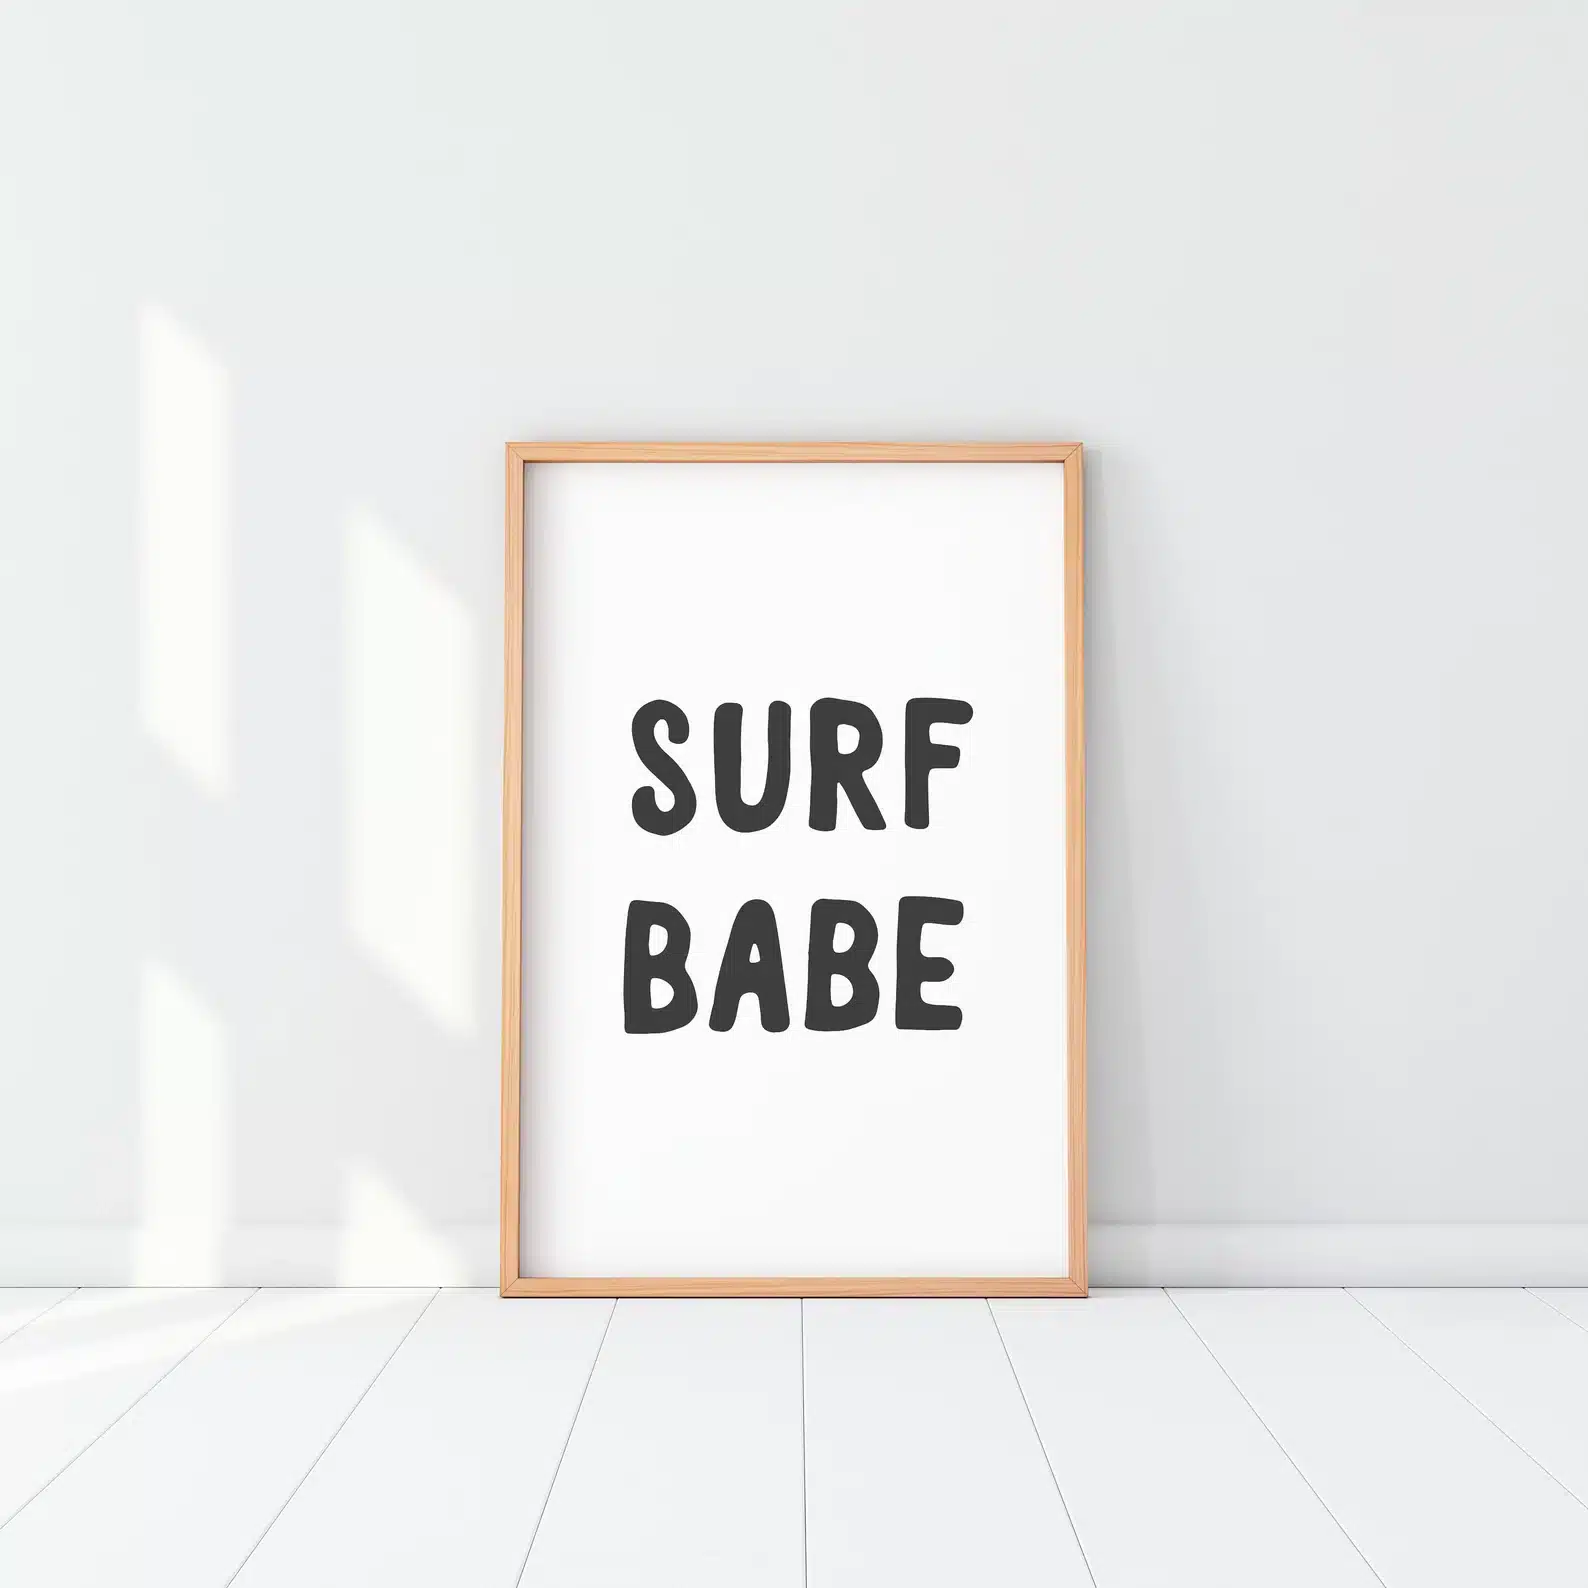 surfer girl bedroom ideas